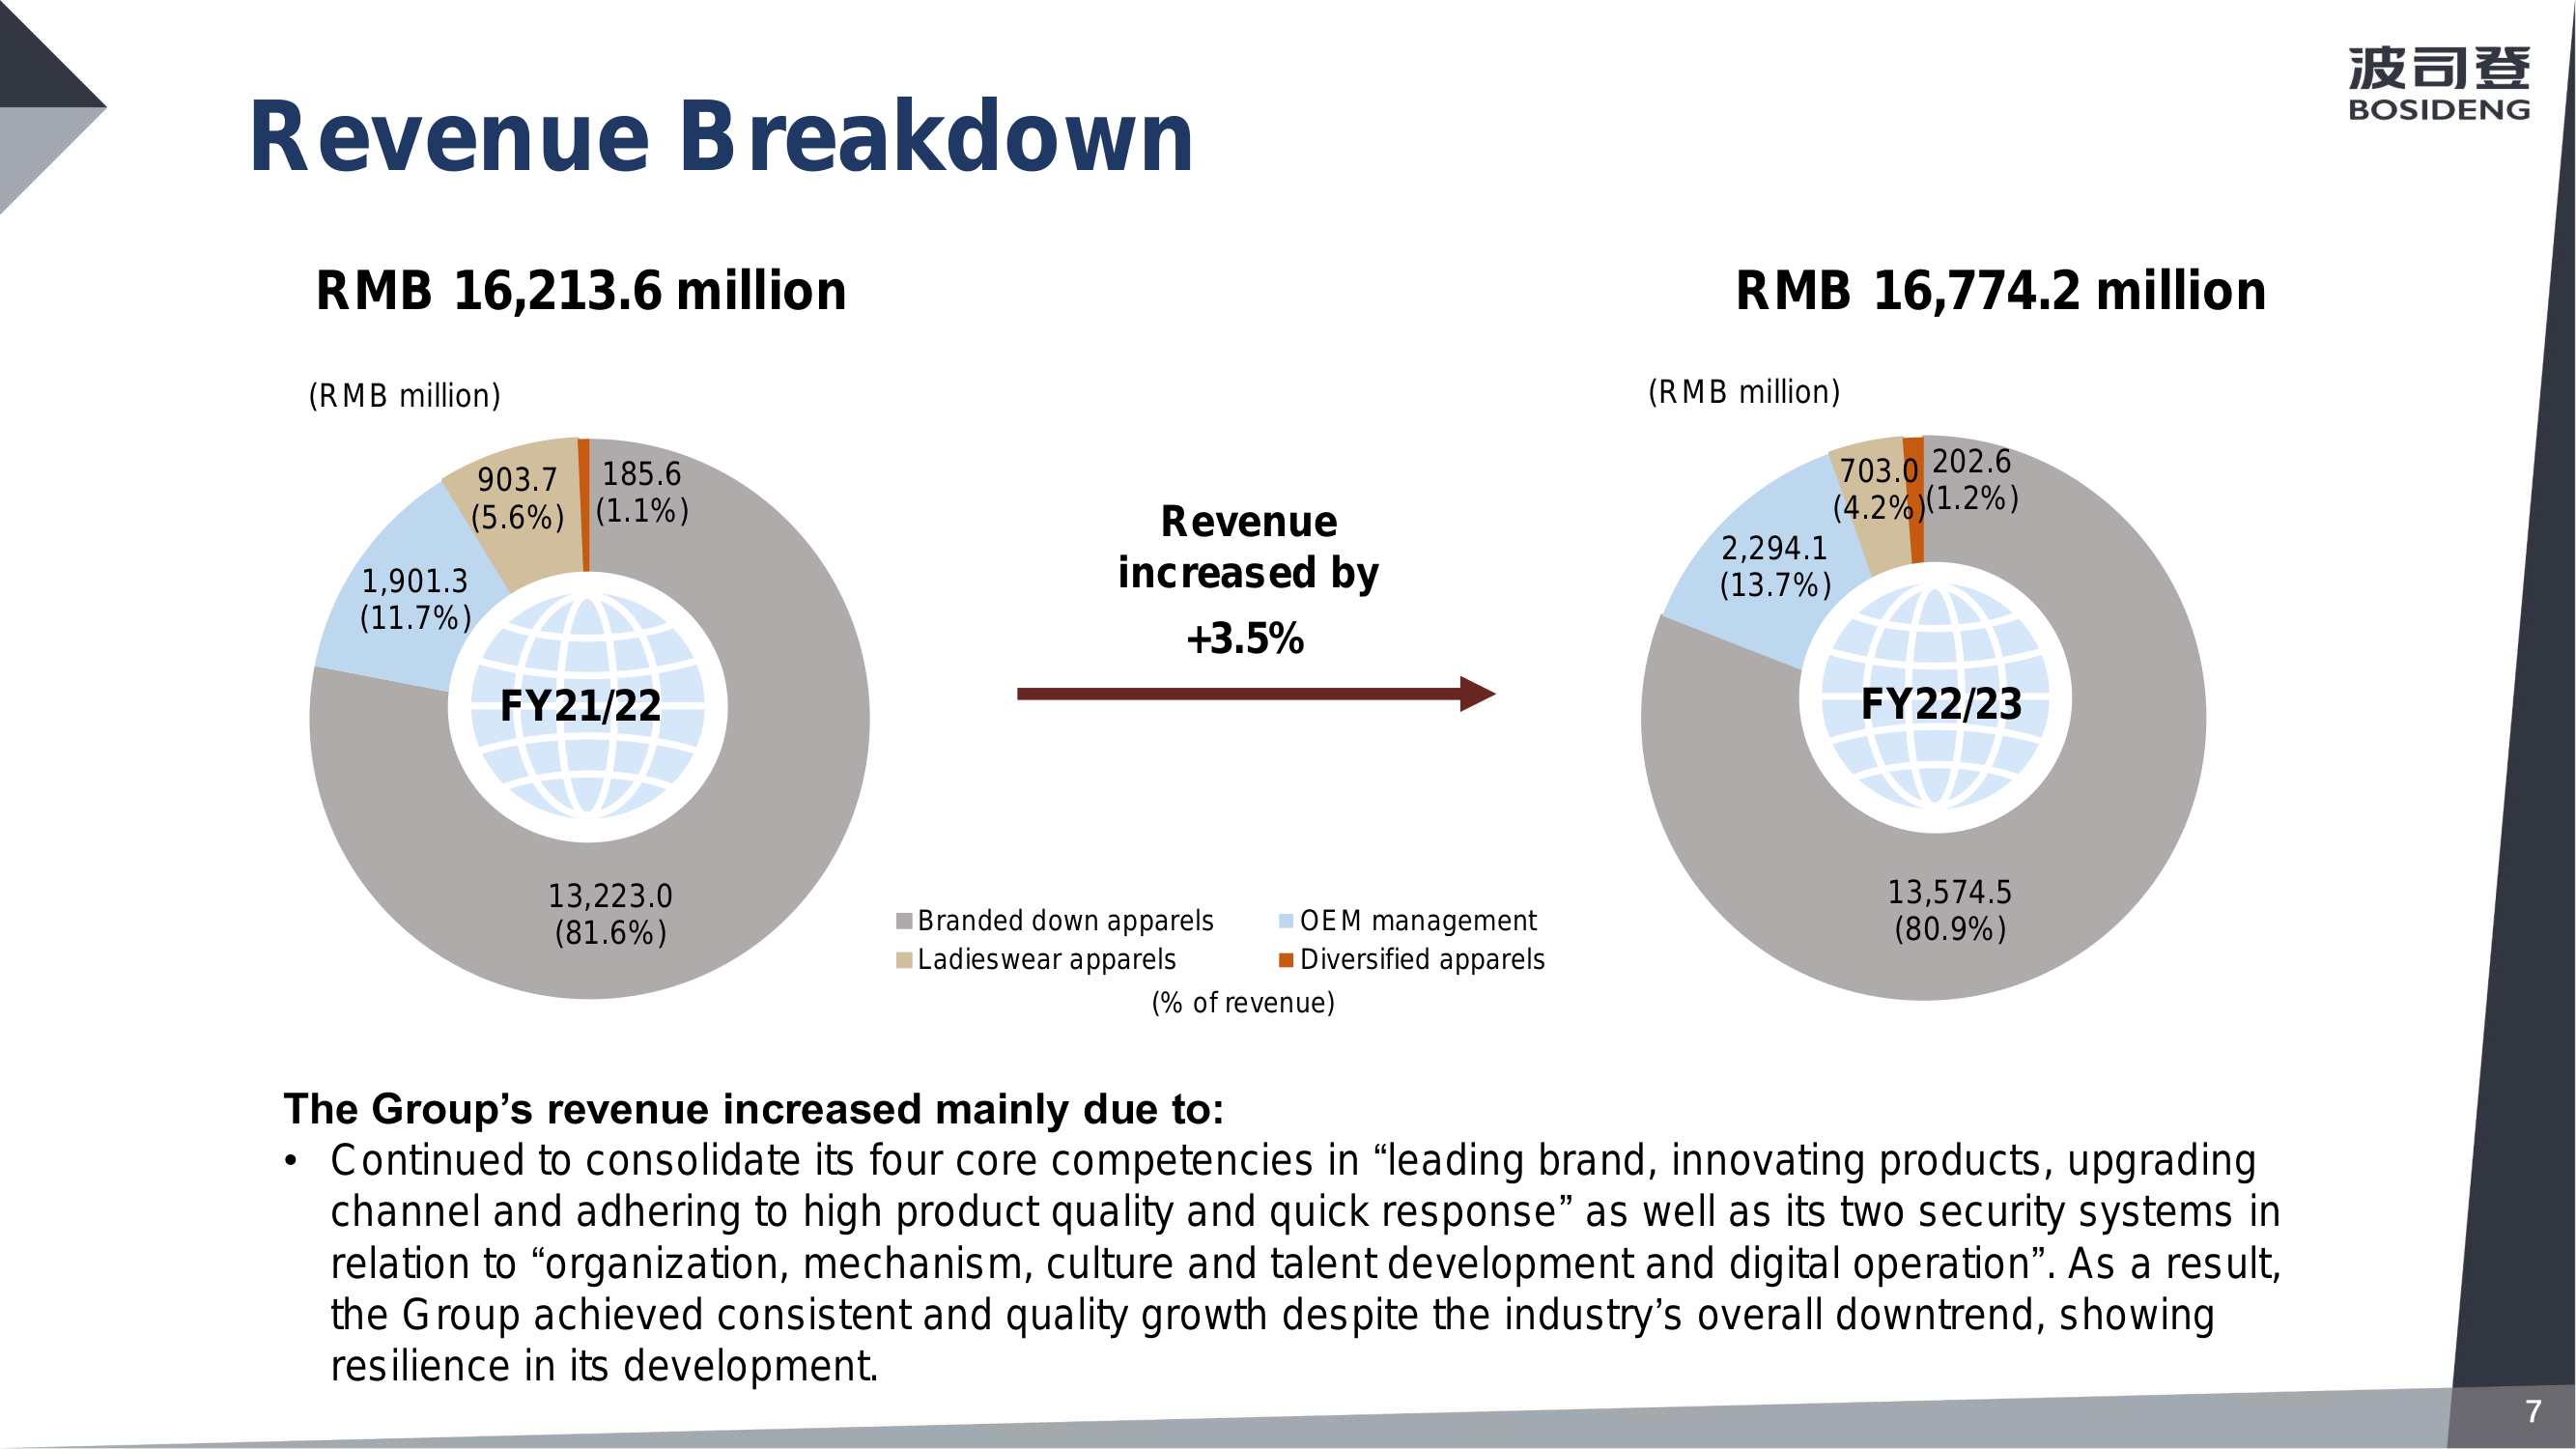 Revenue Breakdown 

